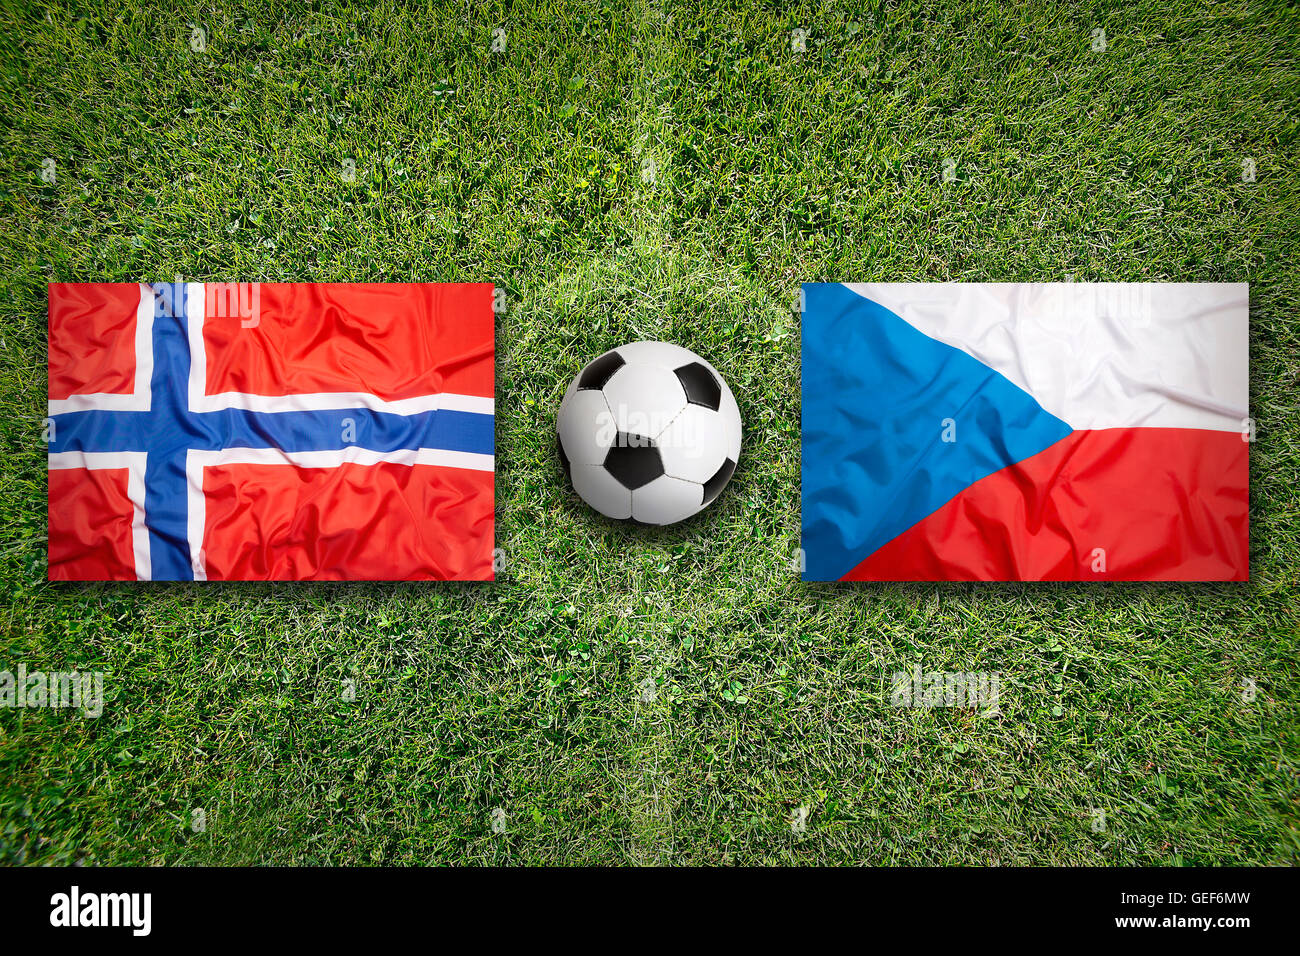 Norway vs. Czech Republic flags on green soccer field Stock Photo